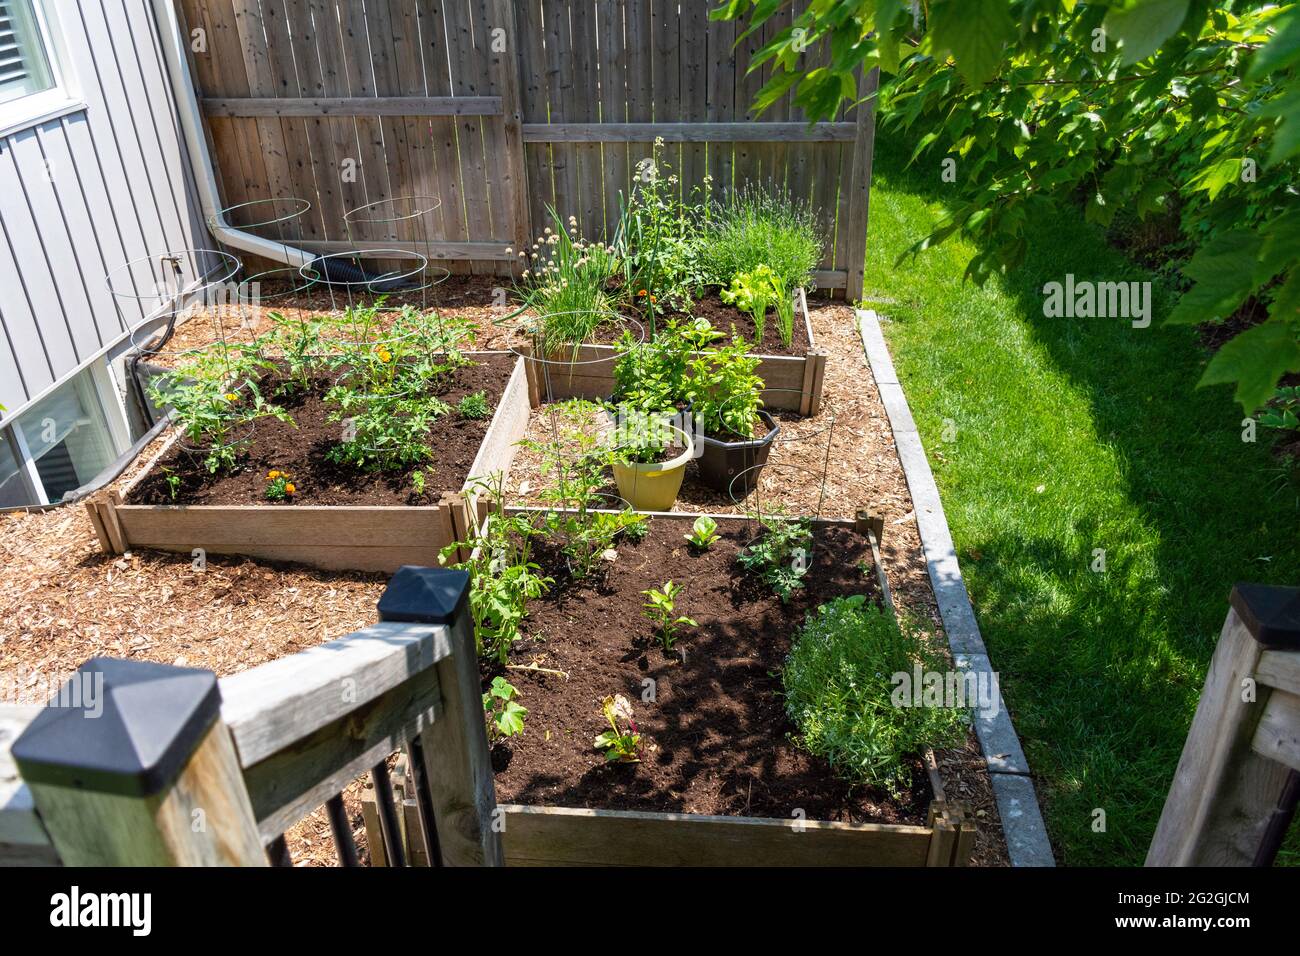 Ce petit jardin urbain de cour contient des lits de plantation carrés surélevés pour cultiver des légumes et des herbes tout au long de l'été. Banque D'Images